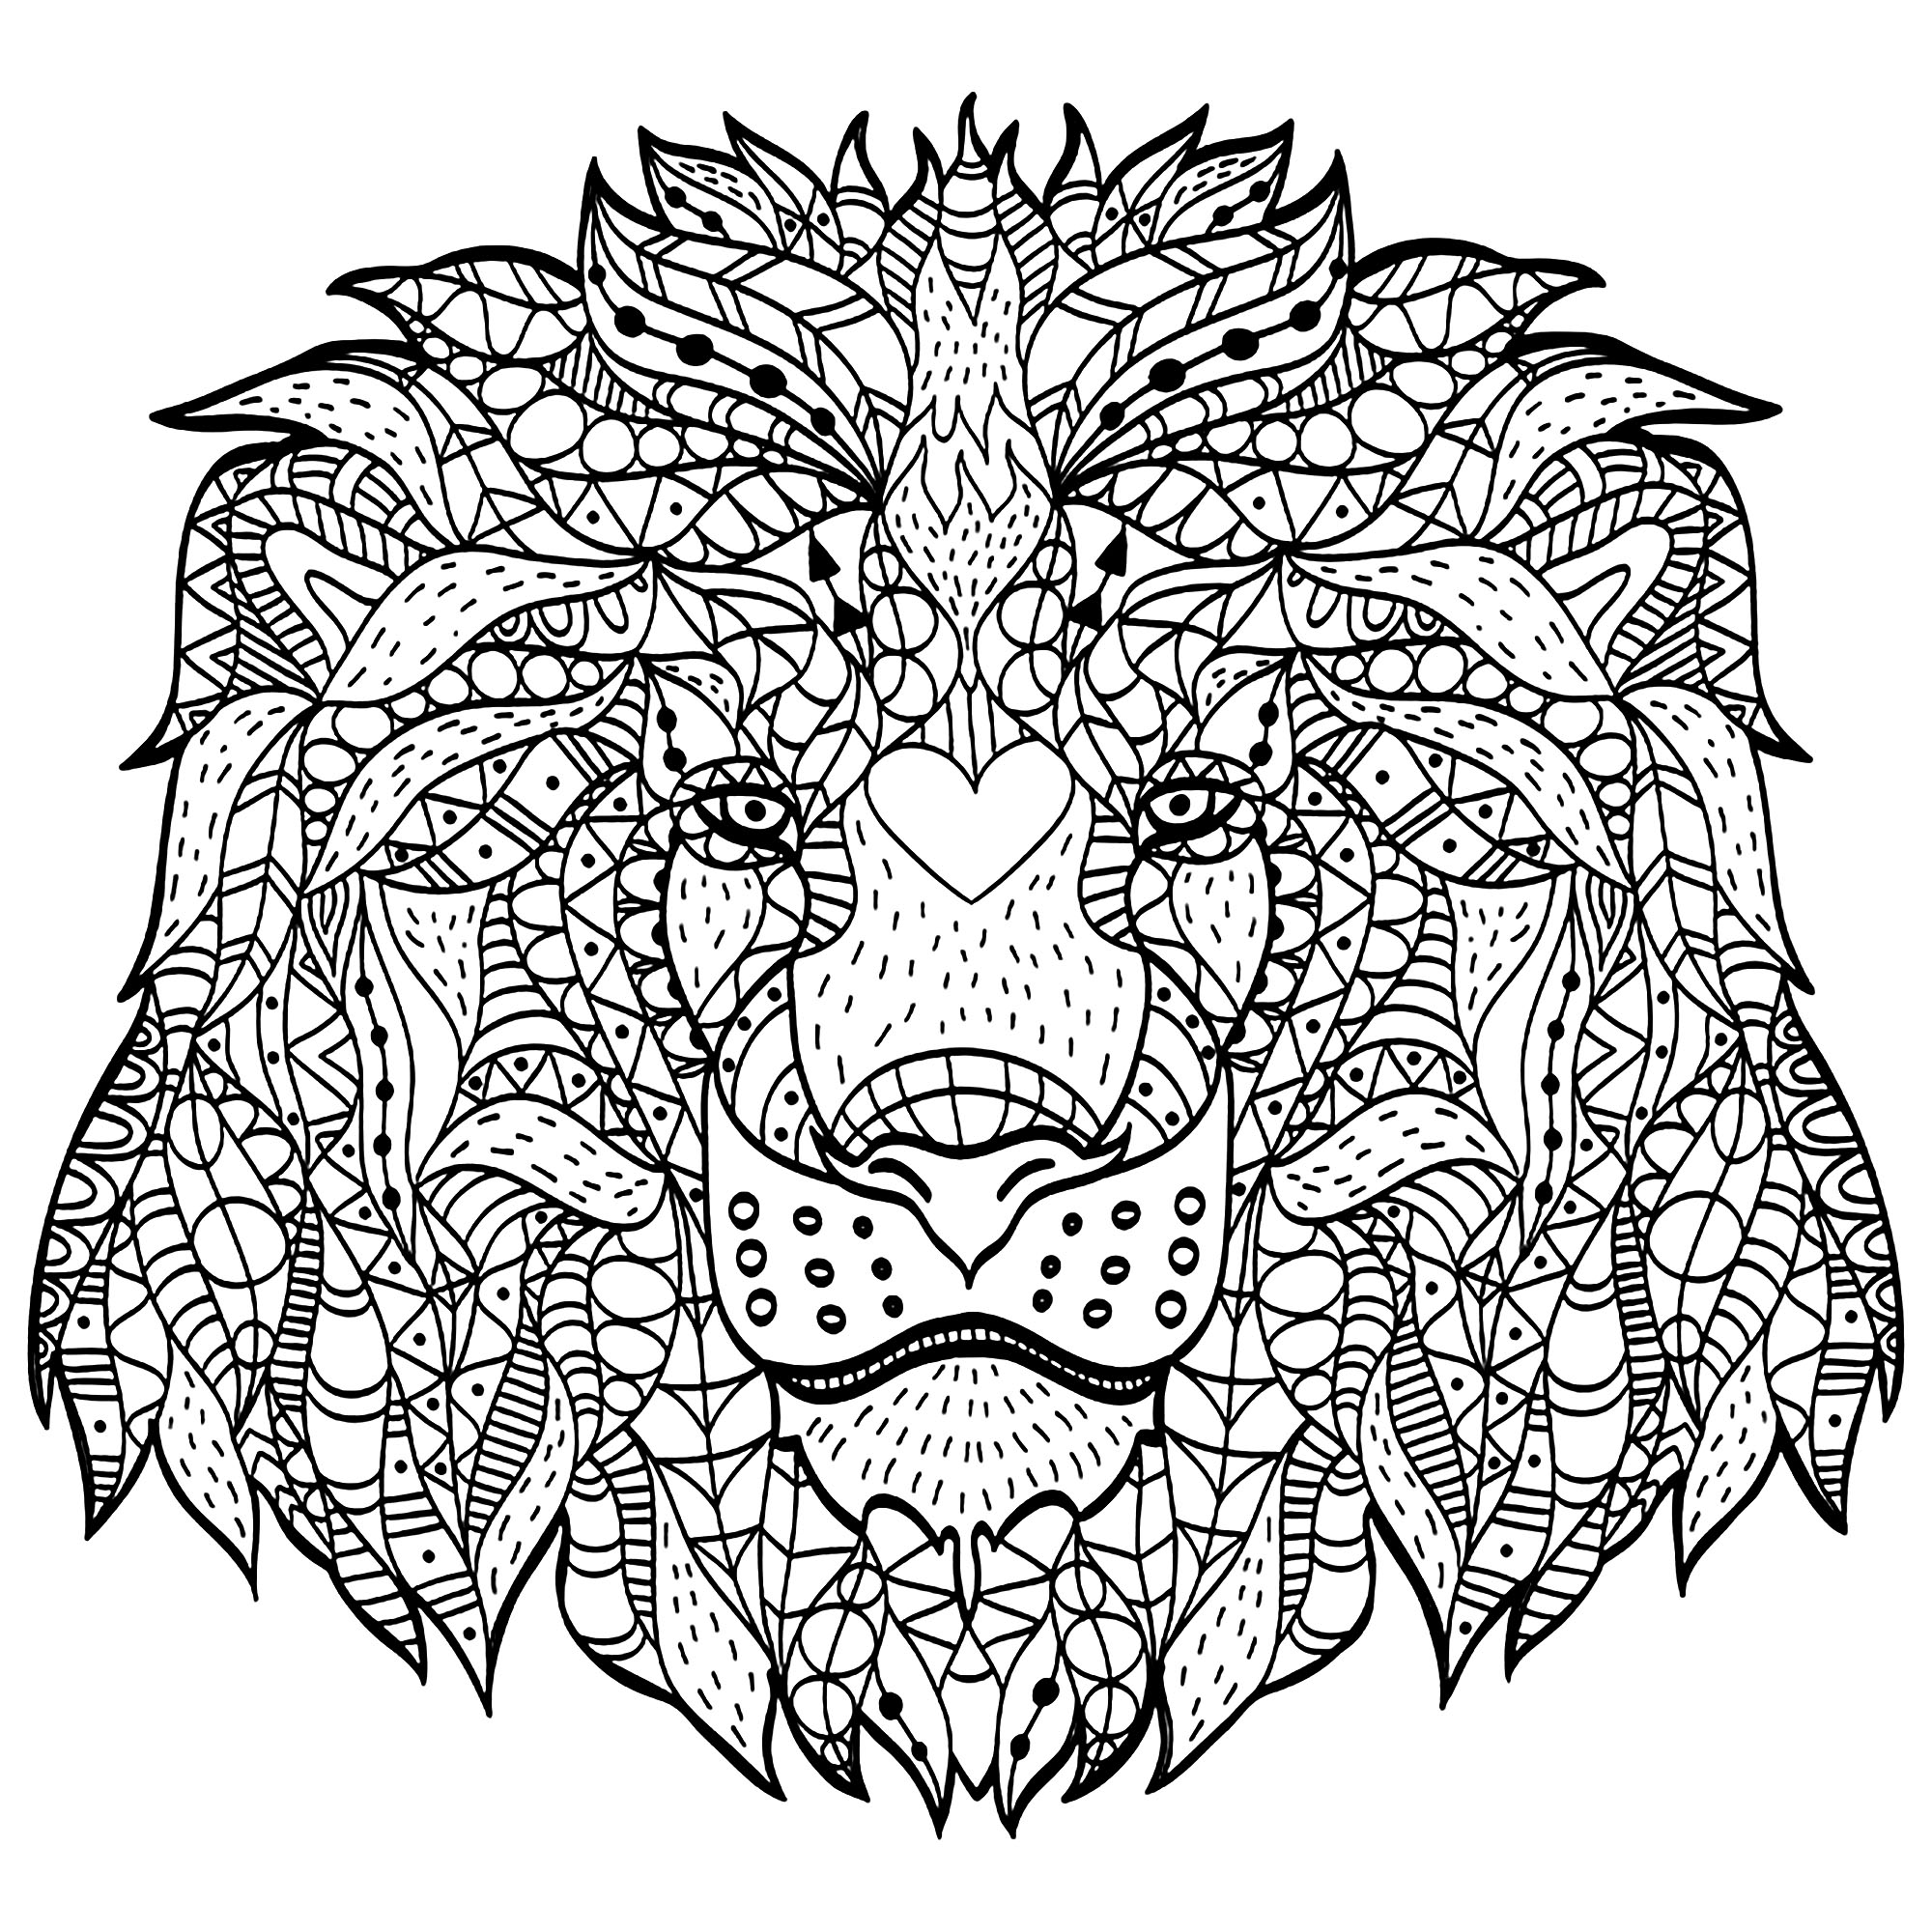 Dieser Löwenkopf, der mit Zentangle-Mustern erstellt wurde, wird Ihnen viel Konzentration abverlangen! Viel Spaß dabei!